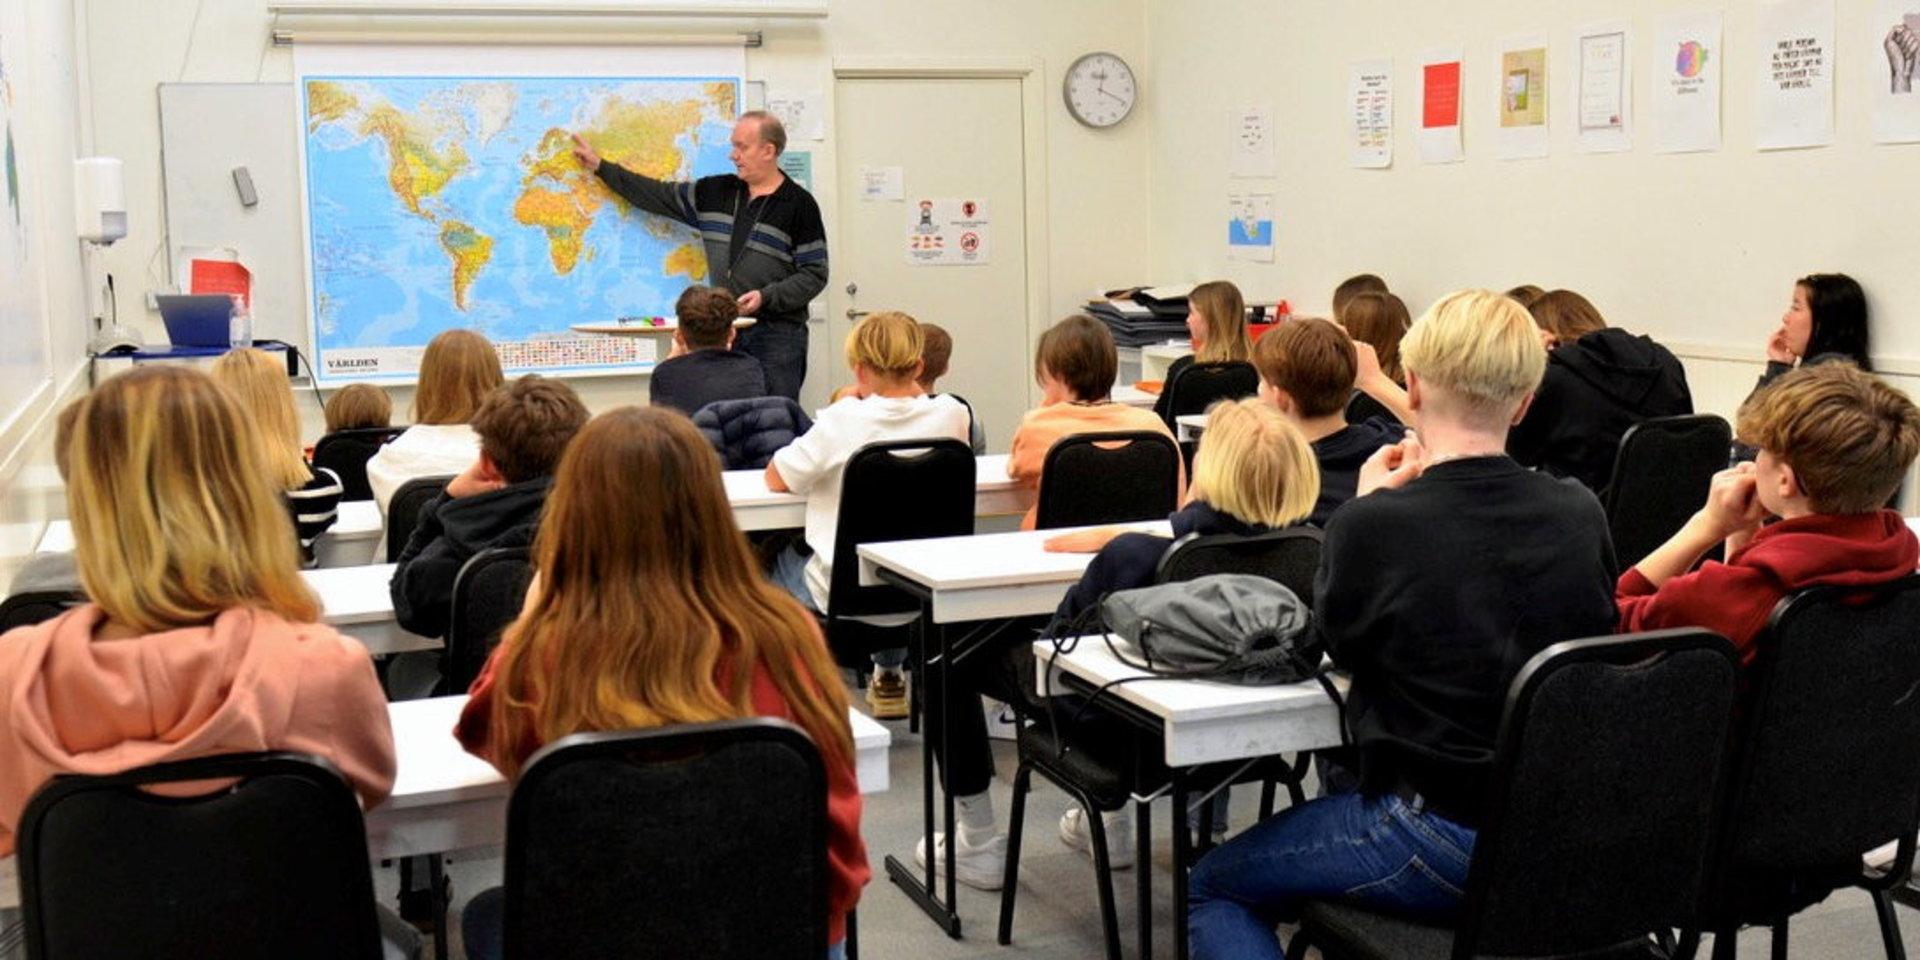 ”I Sverige har vi ett skolsystem där alla elever och deras föräldrar har rätten att välja en skola med goda resultat oavsett vem man är. Vi har dock problem med skolvalssystemet.”